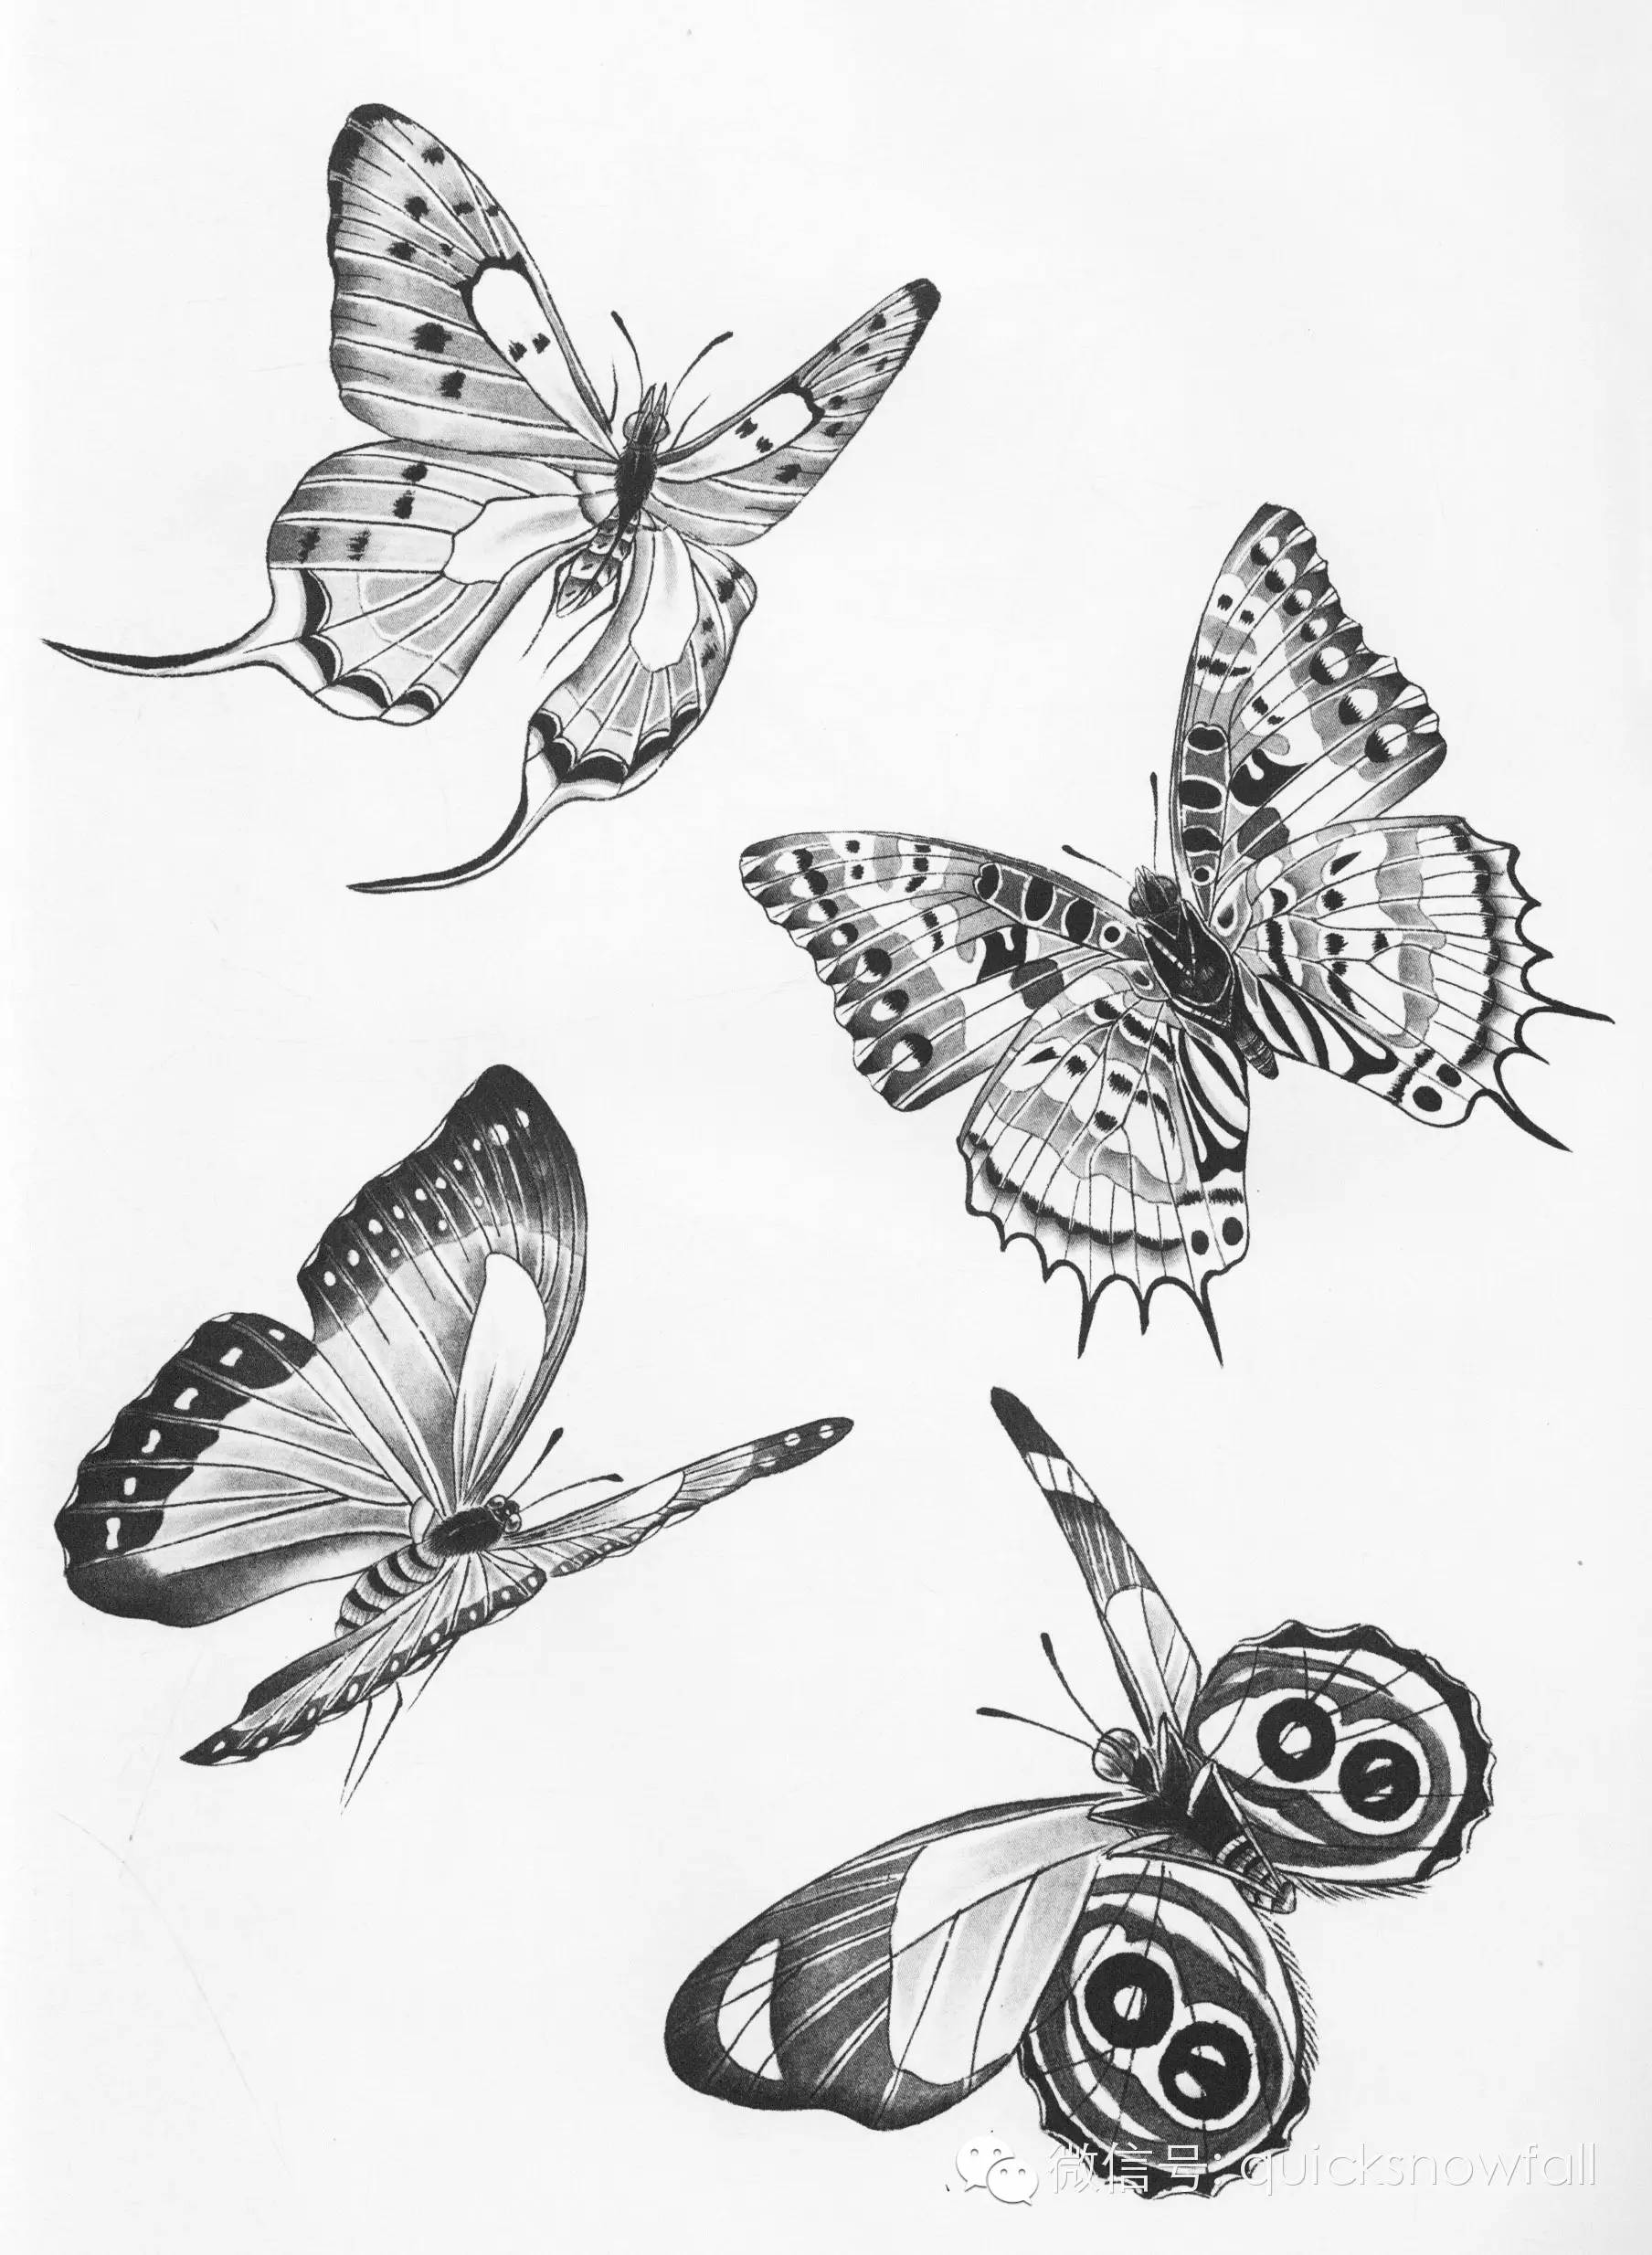 国画基础教程工笔蝴蝶画法与线描画谱